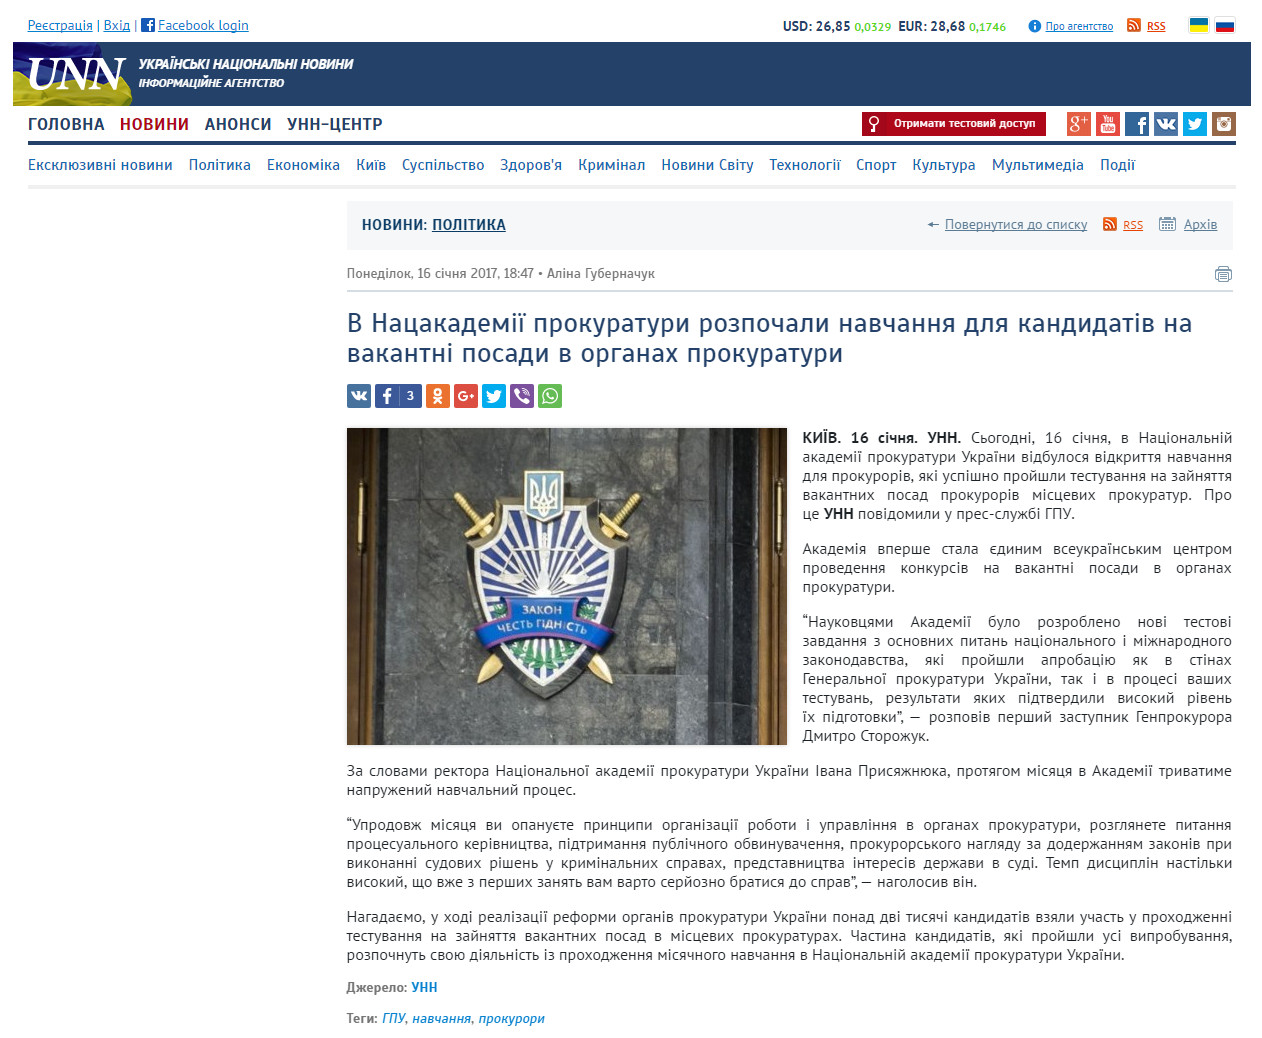 http://www.unn.com.ua/uk/news/1636058-v-natsakademiyi-prokuraturi-rozpochali-navchannya-dlya-kandidativ-na-vakantni-posadi-v-organakh-prokuraturi